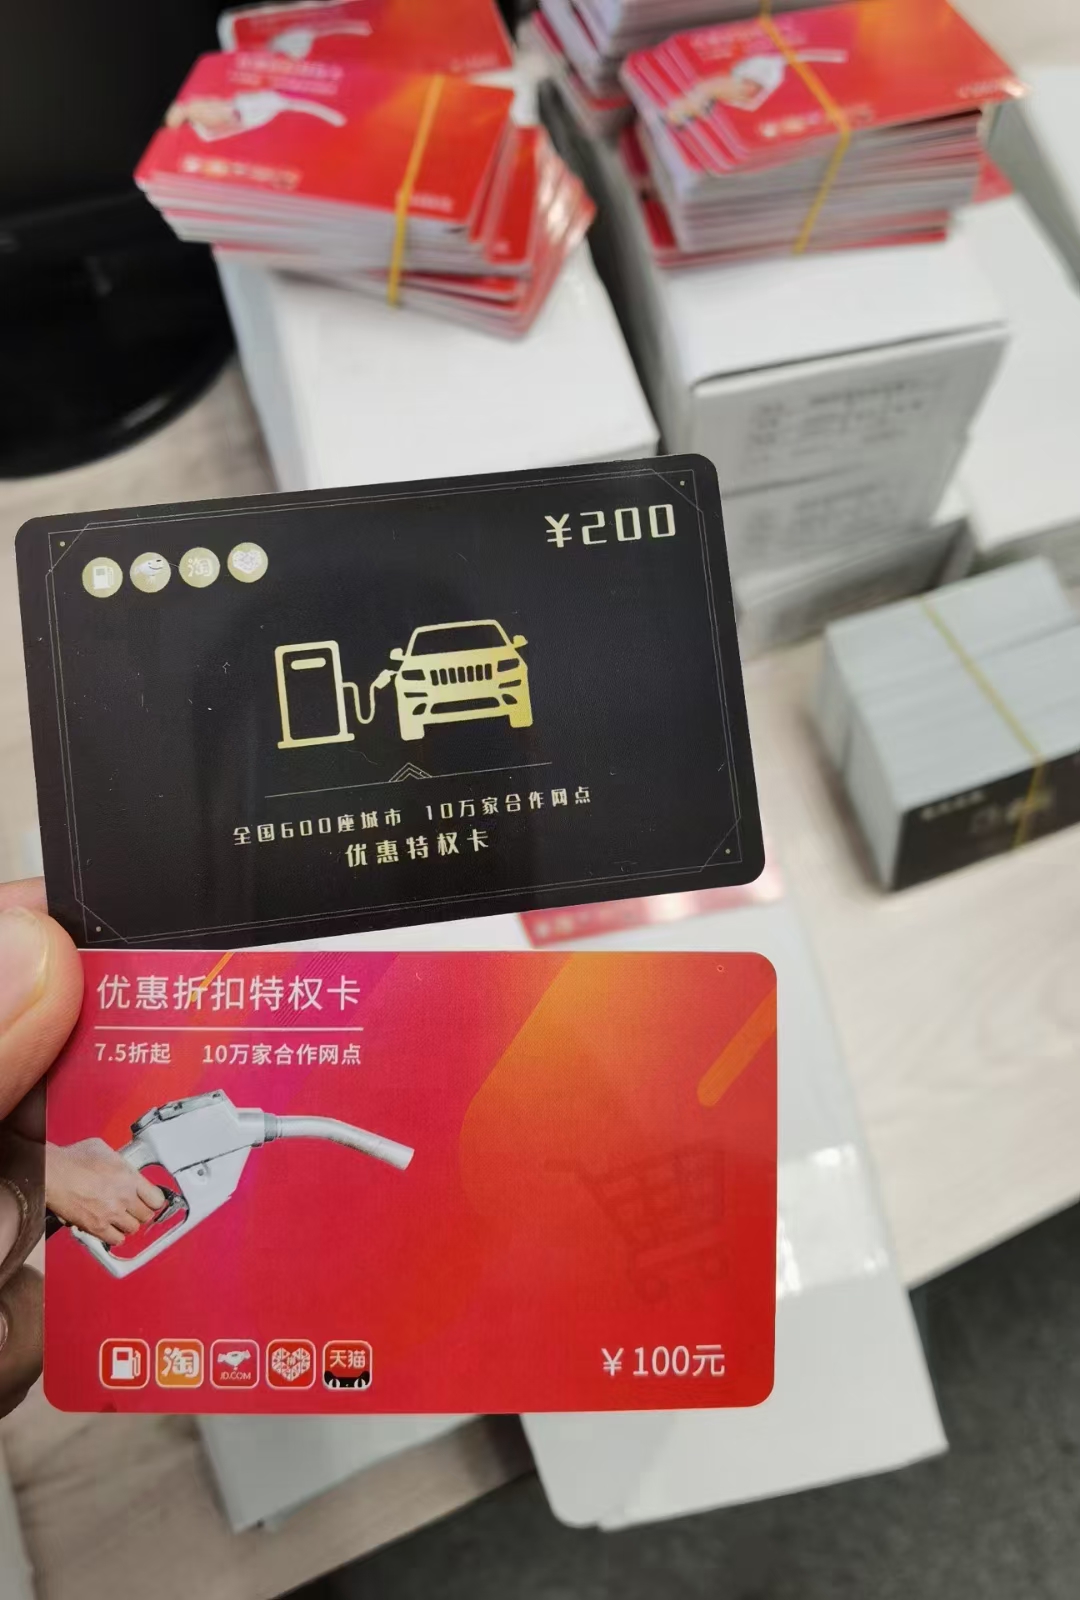 汉中加油8折软件优惠加油卡系统 加油折扣卡源头